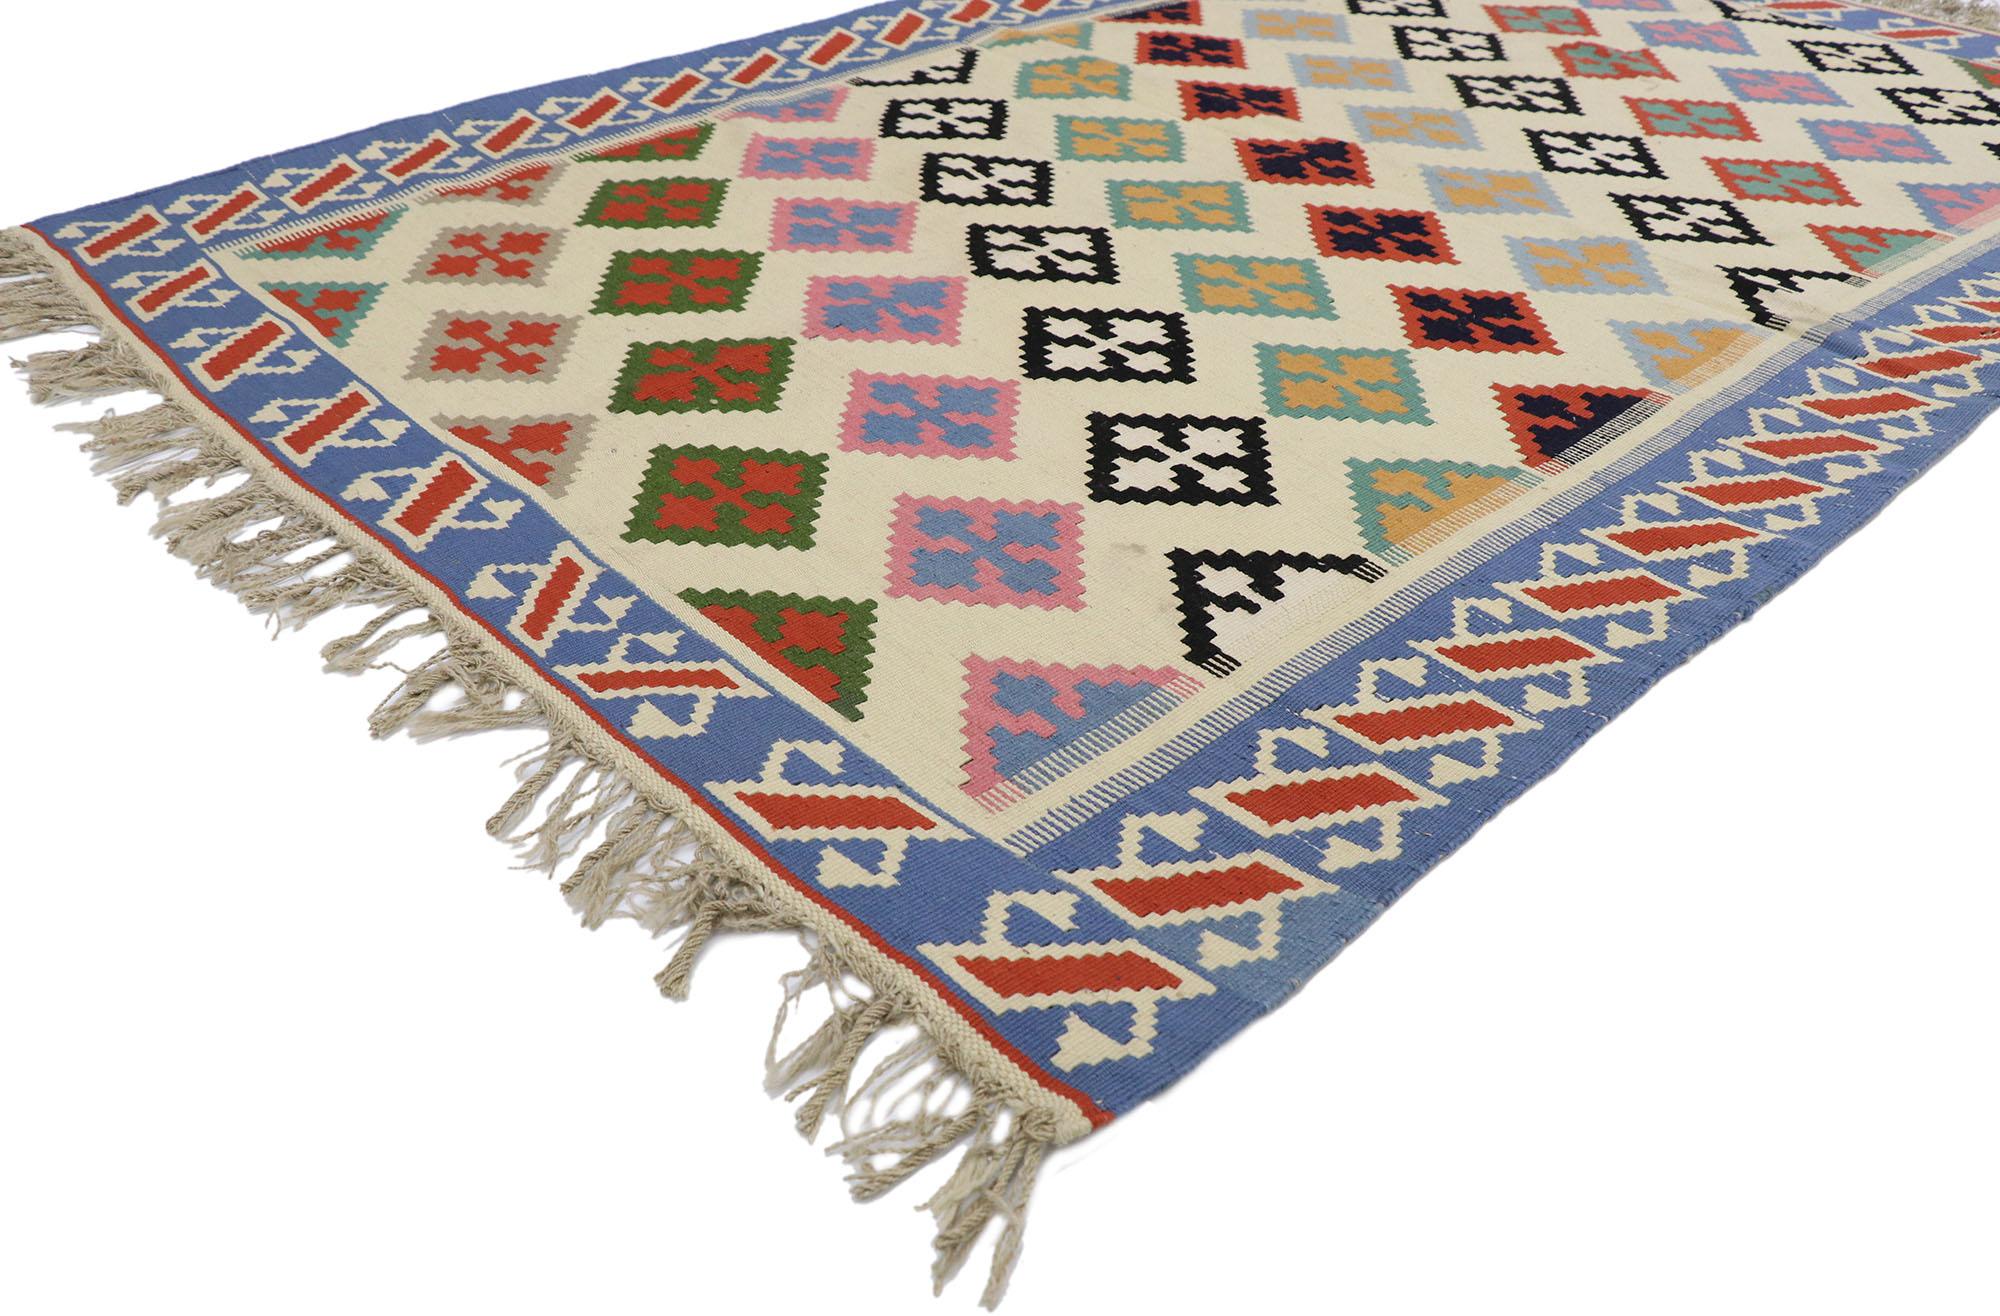 78028 vintage Persian Shiraz Kilim rug with Tribal style 04'02 x 06'04. Plein de petits détails et un design expressif audacieux combiné avec des couleurs vibrantes et un style tribal, ce tapis kilim persan vintage en laine tissé à la main est une